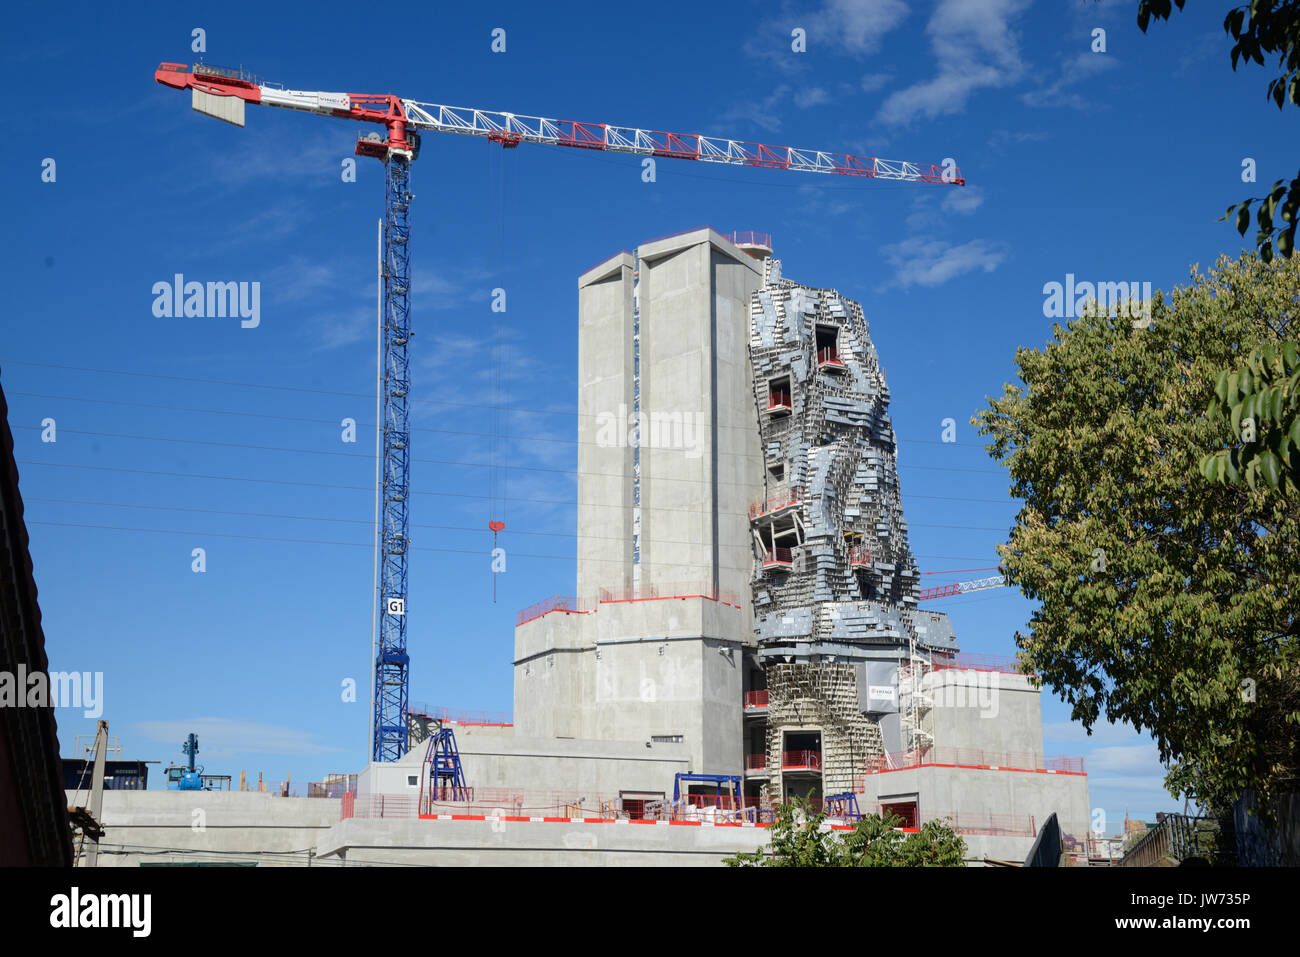 Arles, Frankreich. 11 August, 2017. Frank Gehry Tower nimmt Gestalt in Arles. Eines der neuesten Projekte, die von führenden amerikanischen Architekten Frank Gehry, ist die Form in Arles, für seine jährliche "Rencontres" Foto Festival bekannt, im Süden von Frankreich. Steigende 58 Meter über dem niedrigen Stadt Wahrzeichen, das Gebäude besteht aus einem unregelmässigen Turm verkleidet in poliertem Stahl und Glas. Fertigstellung im nächsten Jahr, wird der Turm Haus eine experimentelle Arts Center, 'LUMA Arles', der Schweizer Philanthrop Maja Hoffmann finanziert. Quelle: Chris Hellier/Alamy leben Nachrichten Stockfoto